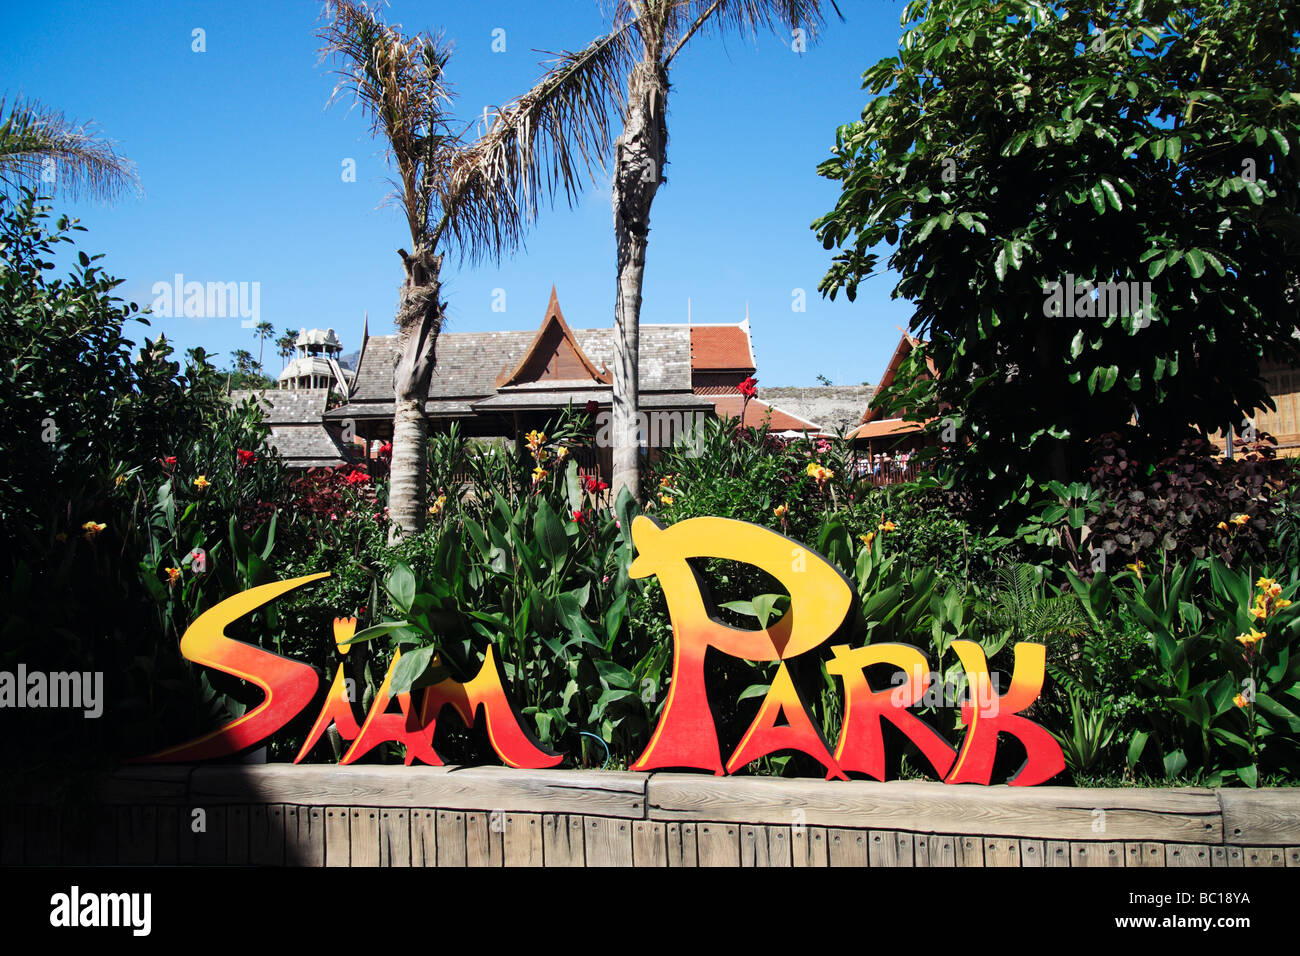 Le Siam Park, le royaume de l'eau, près de Playa de Las Americas, Costa Adeje, Tenerife, Canaries, Espagne Banque D'Images